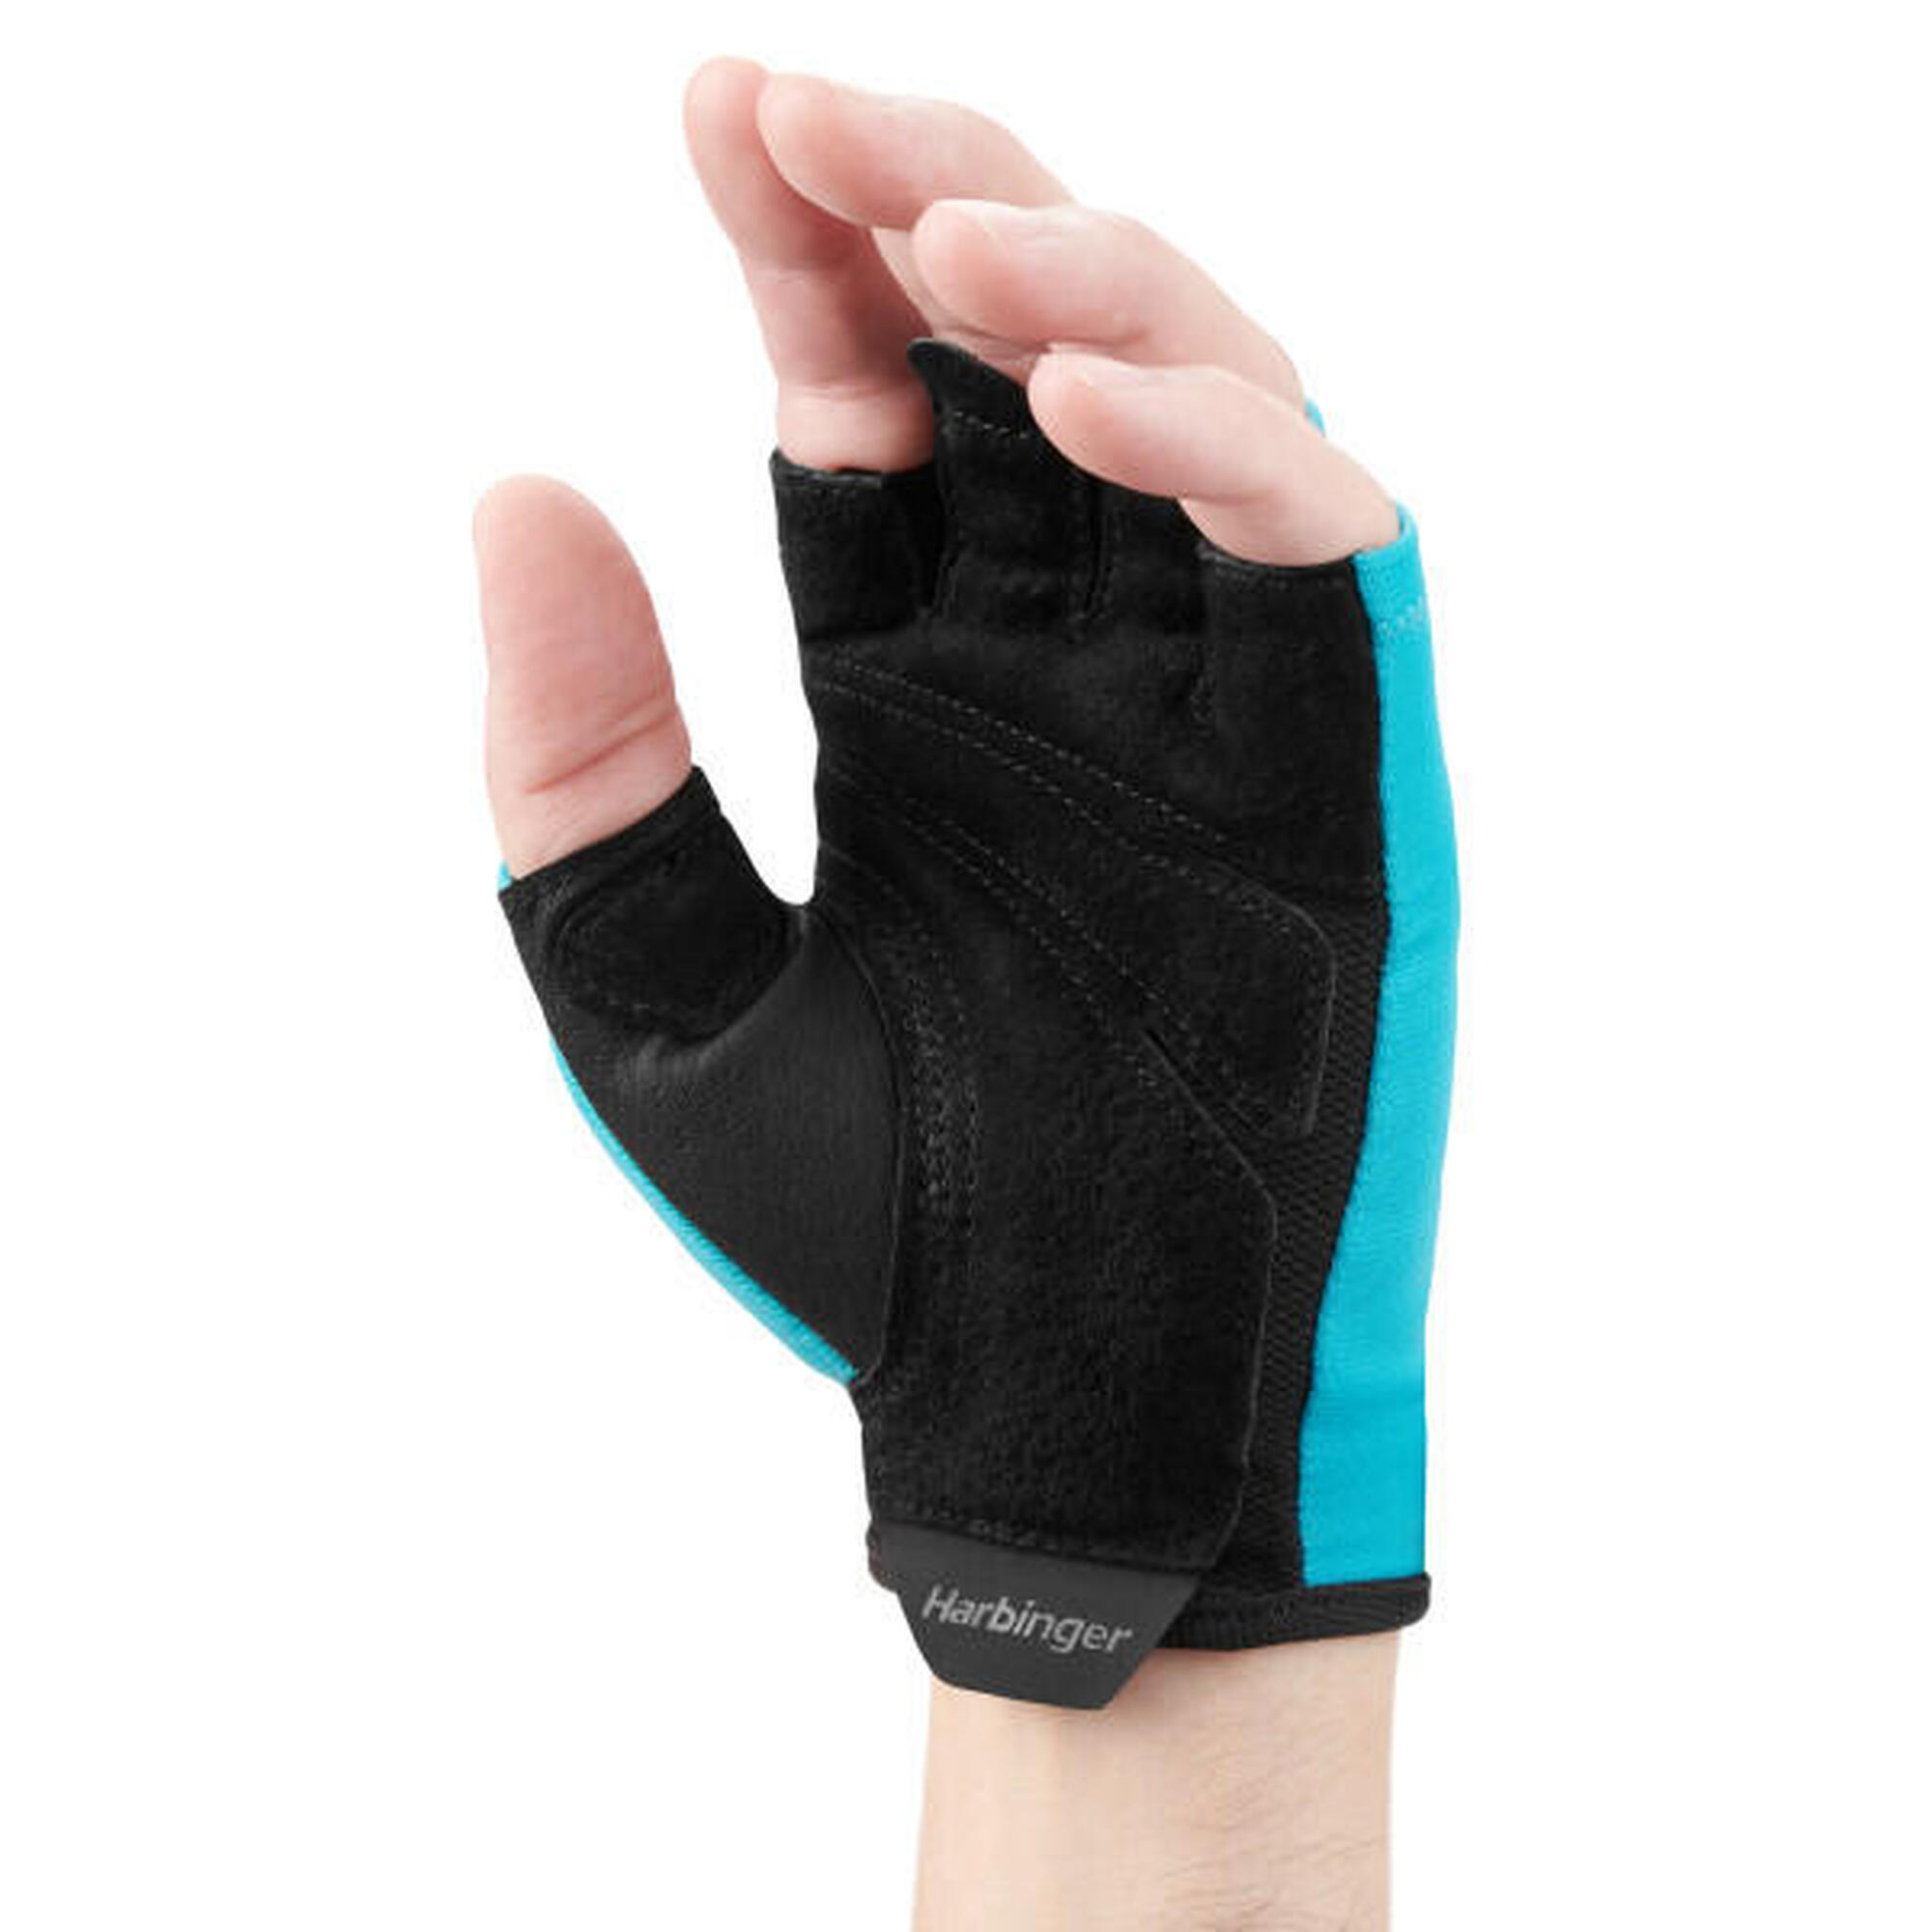 Blauer Unisex-Harbinger-Handschuh für idealen Trainingskomfort Größe XS.